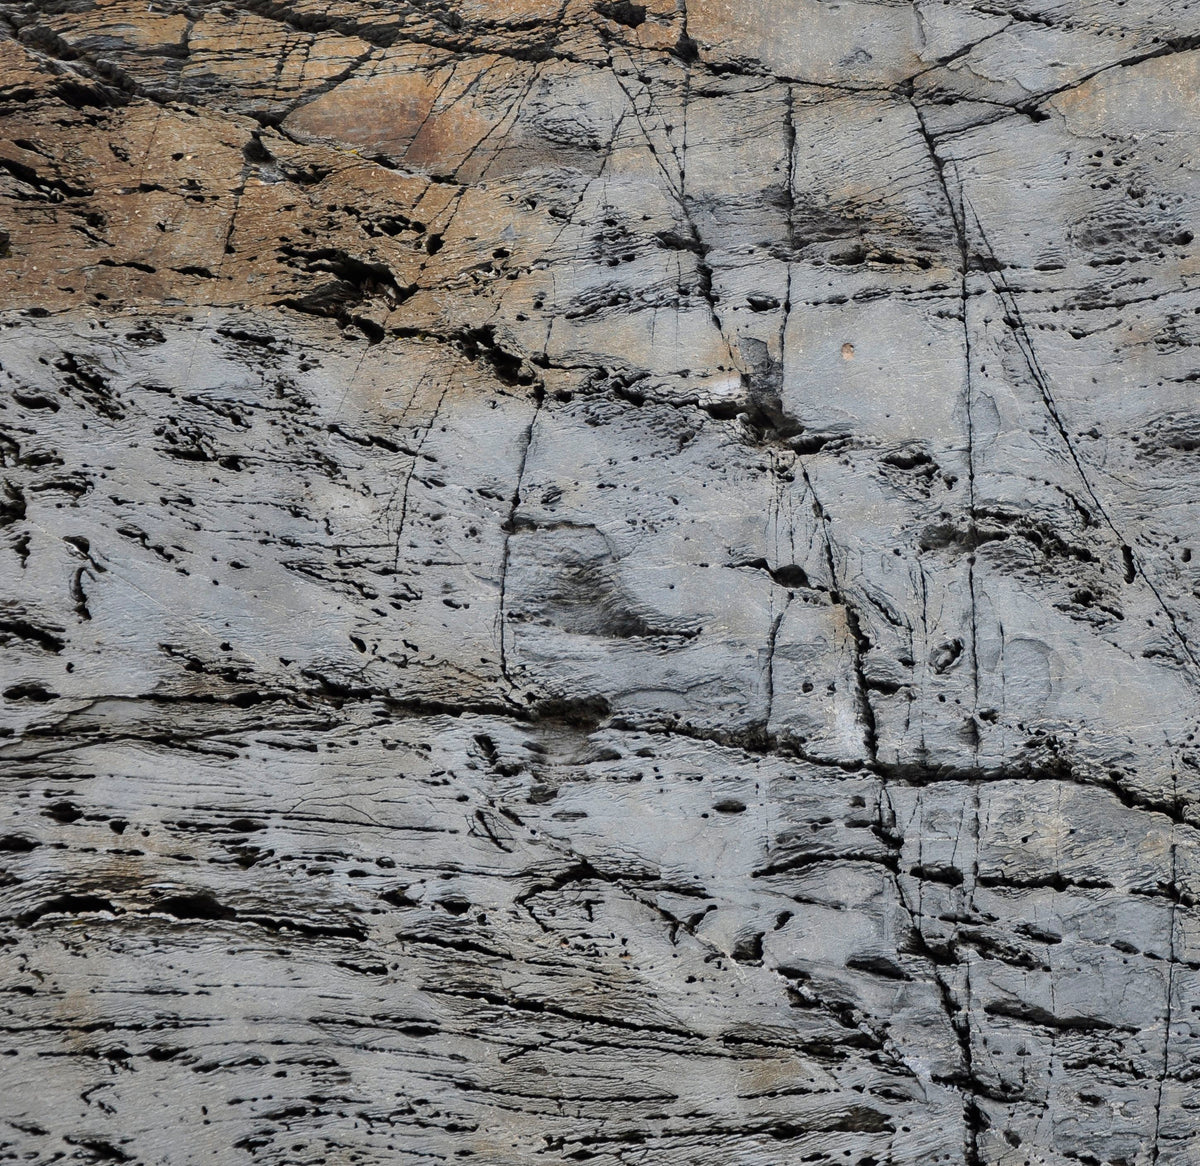 &lt;I&gt;Texture 3: Granite&lt;/I&gt;&lt;br&gt;Coastal Maine, 2013&lt;br&gt;&lt;br&gt;GC0356